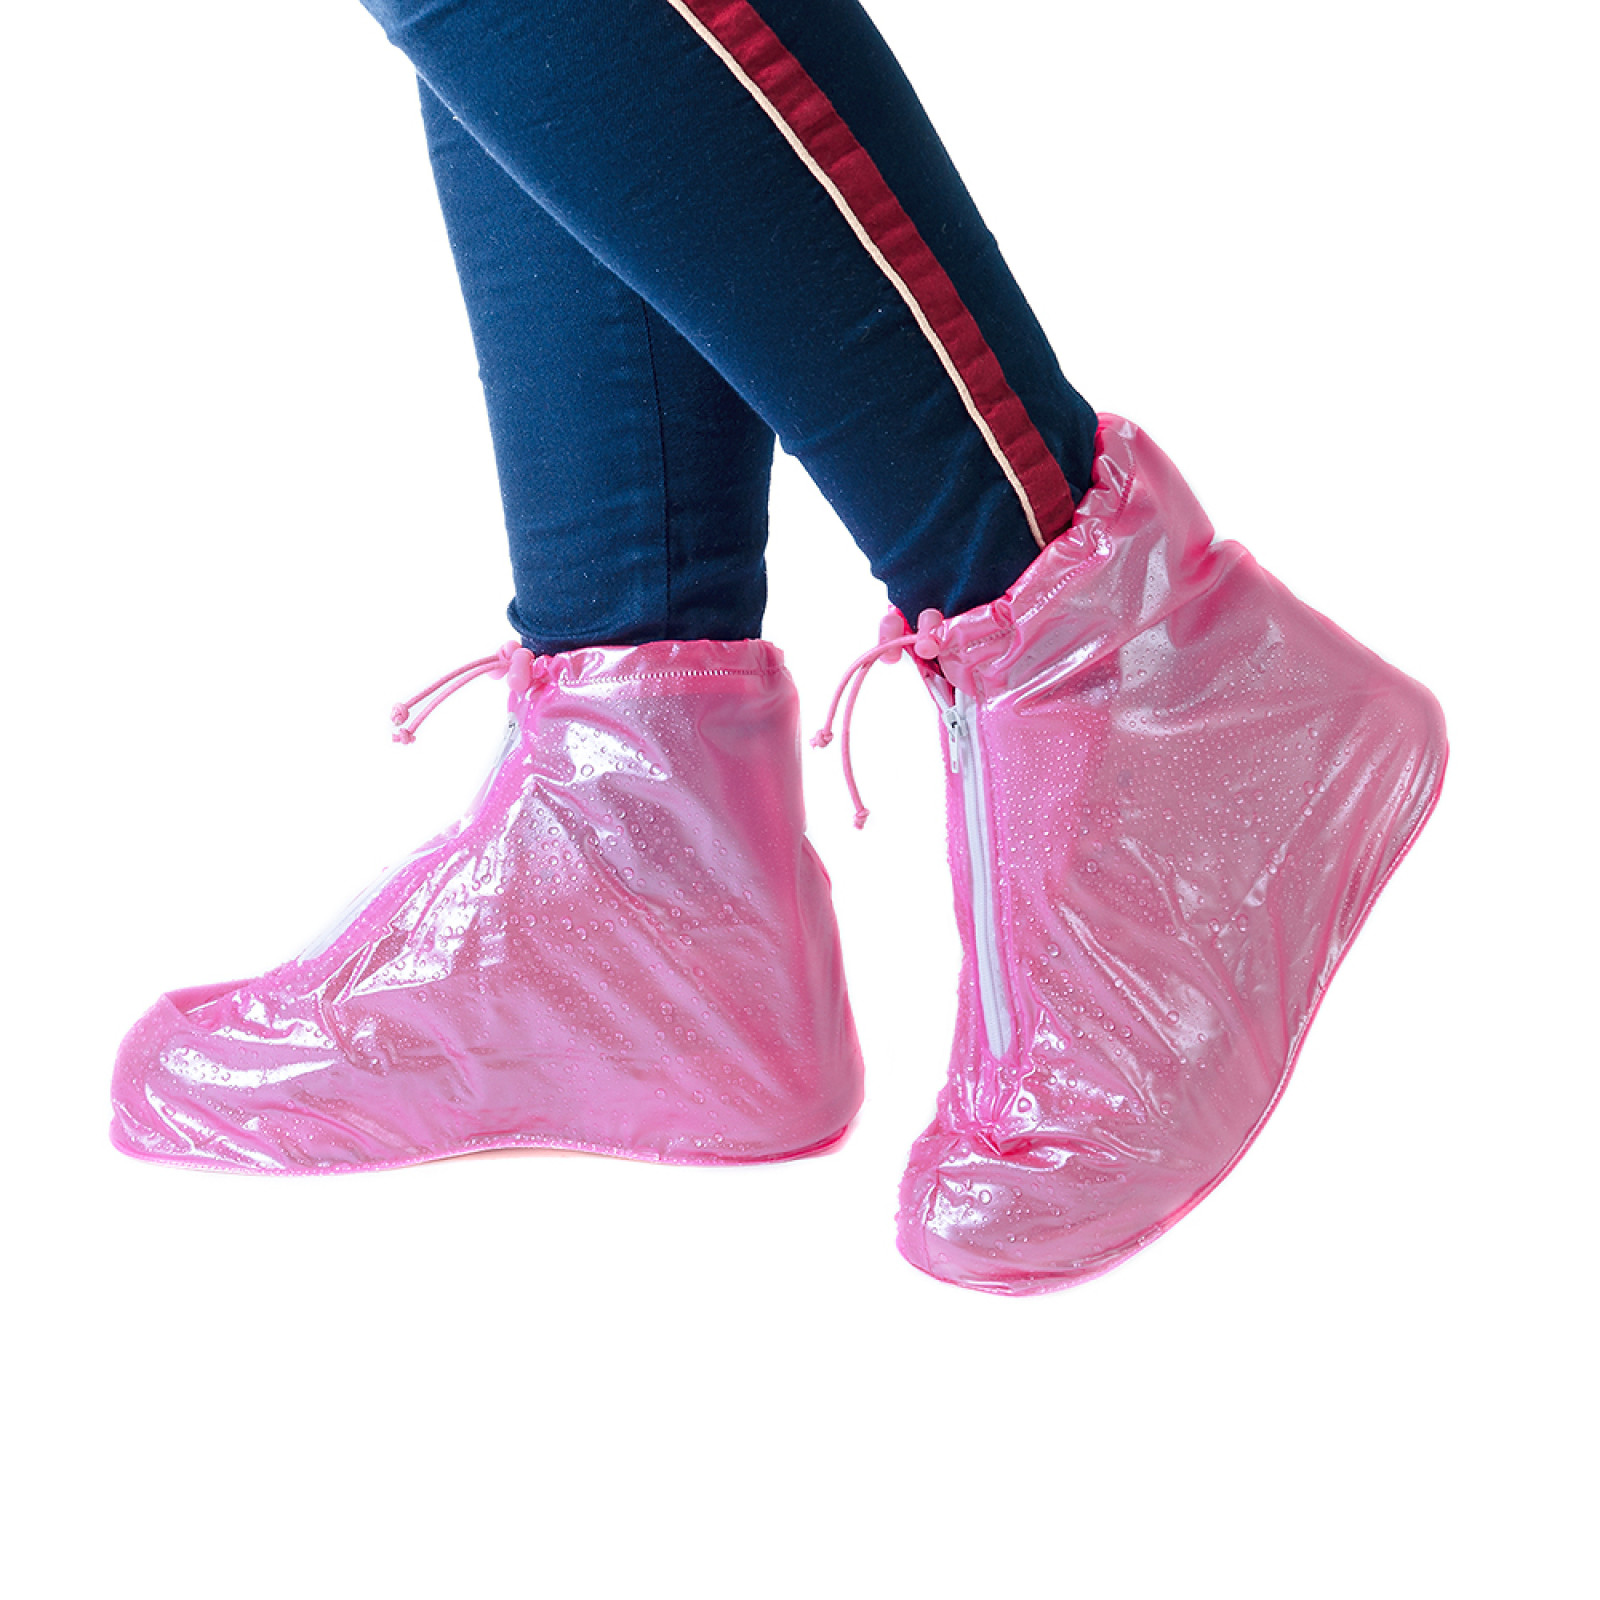 Дождевики для обуви, бахилы от дождя, чехлы для обуви Размер XL Розовый 183553